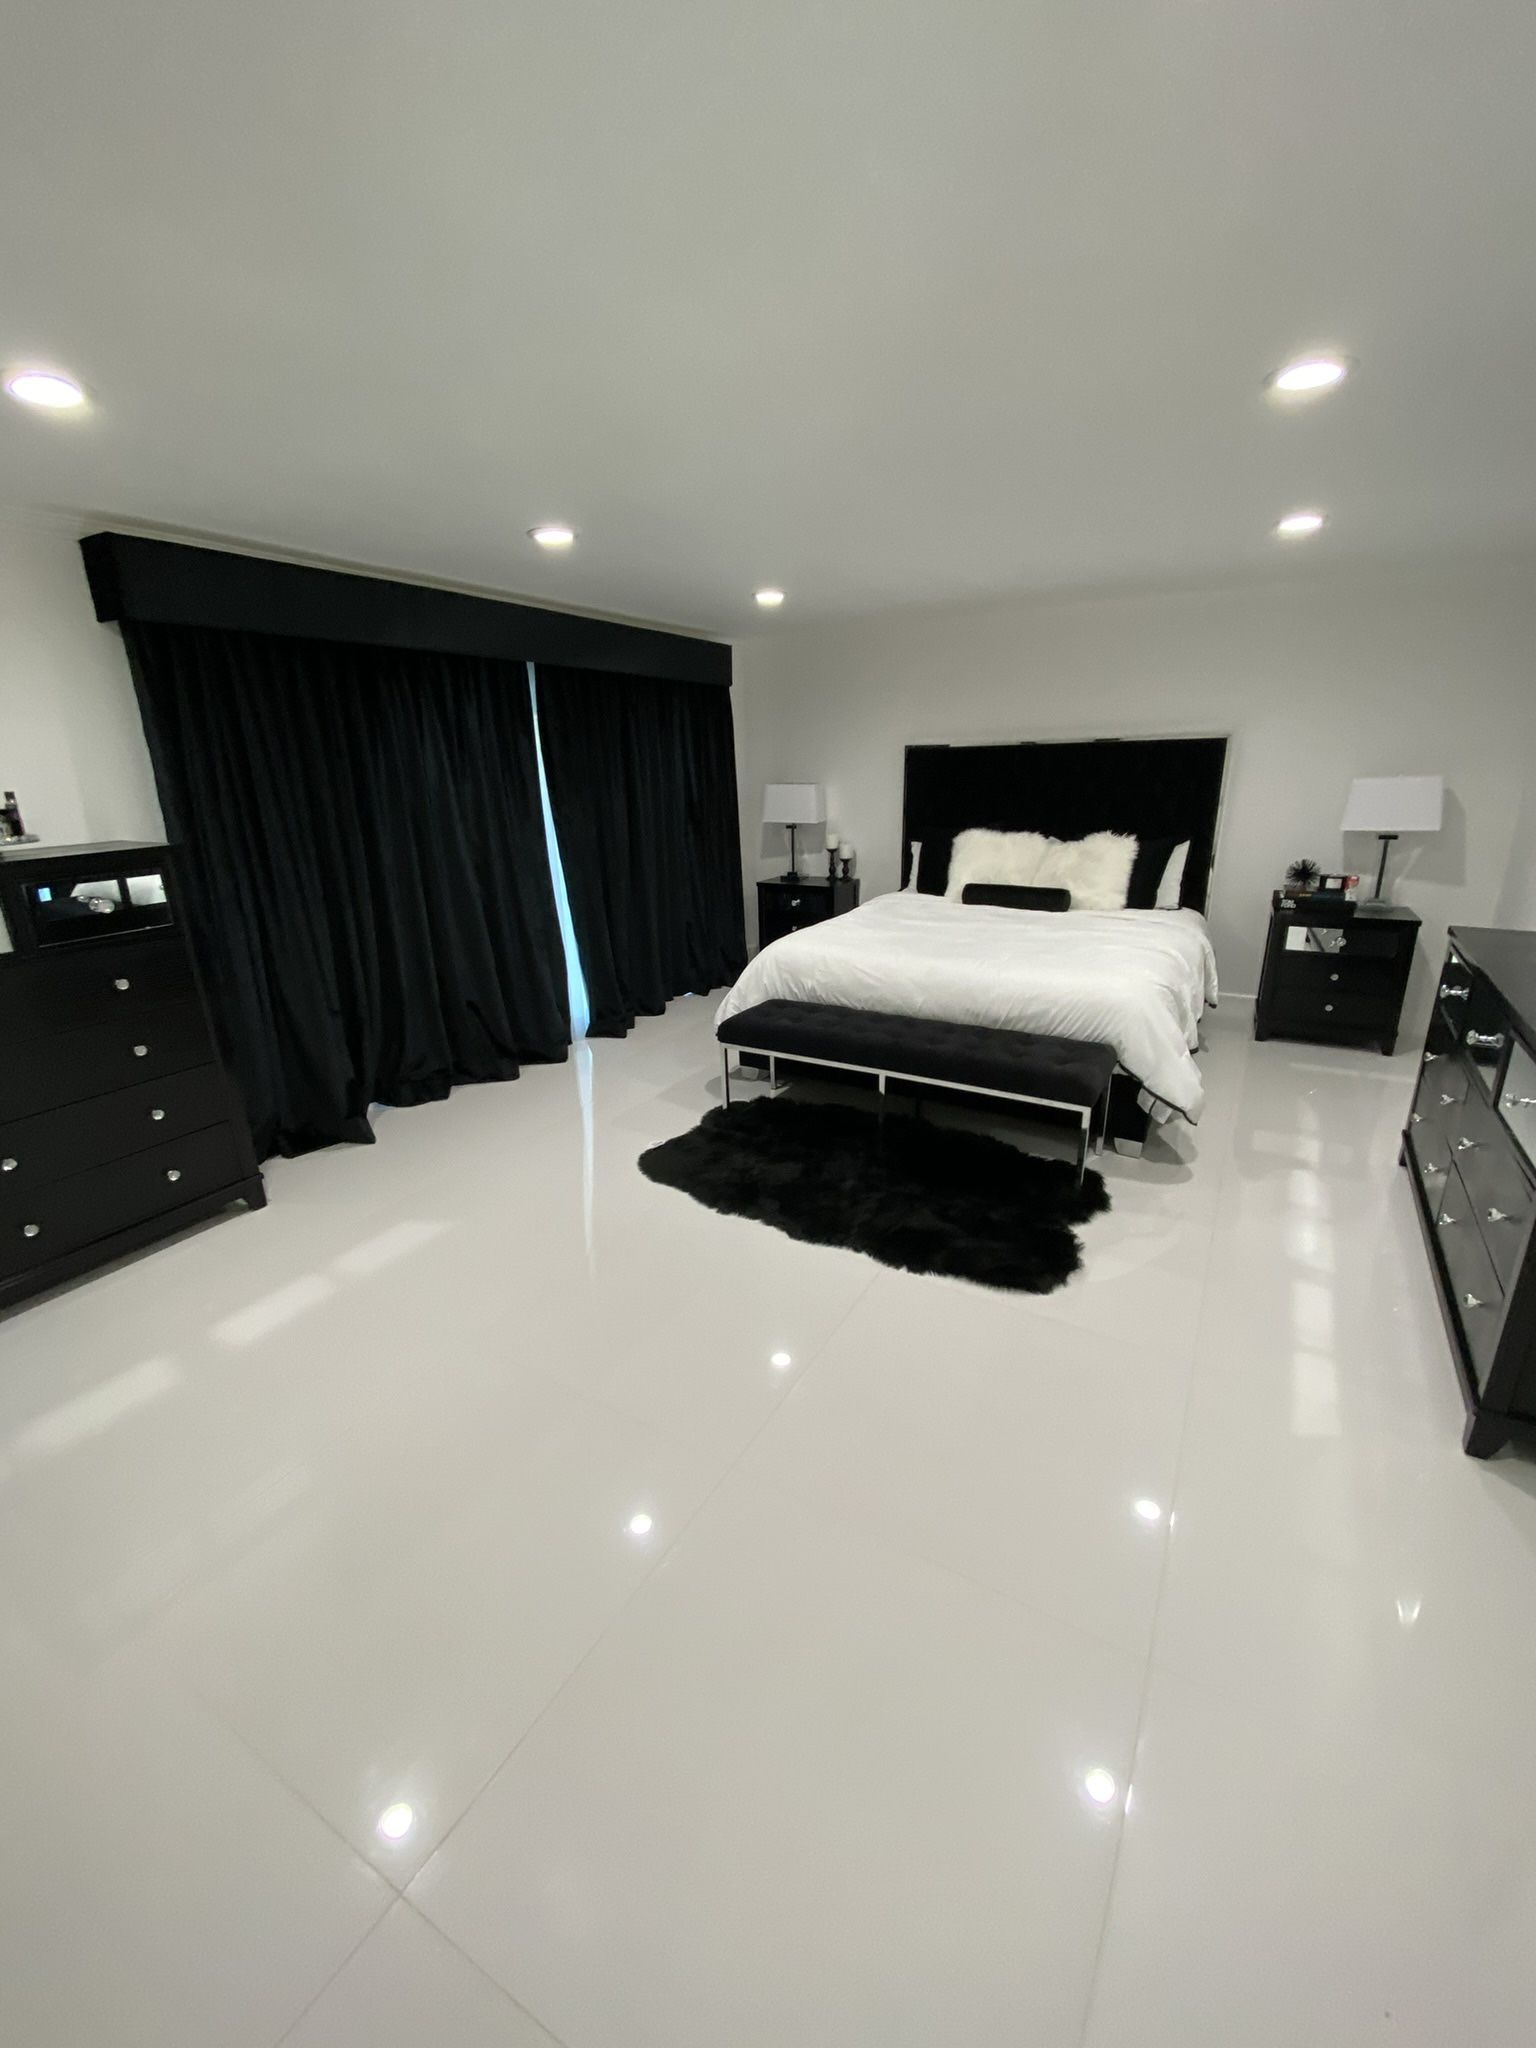 Entire Cal King Black Bedroom Set For Sale! 